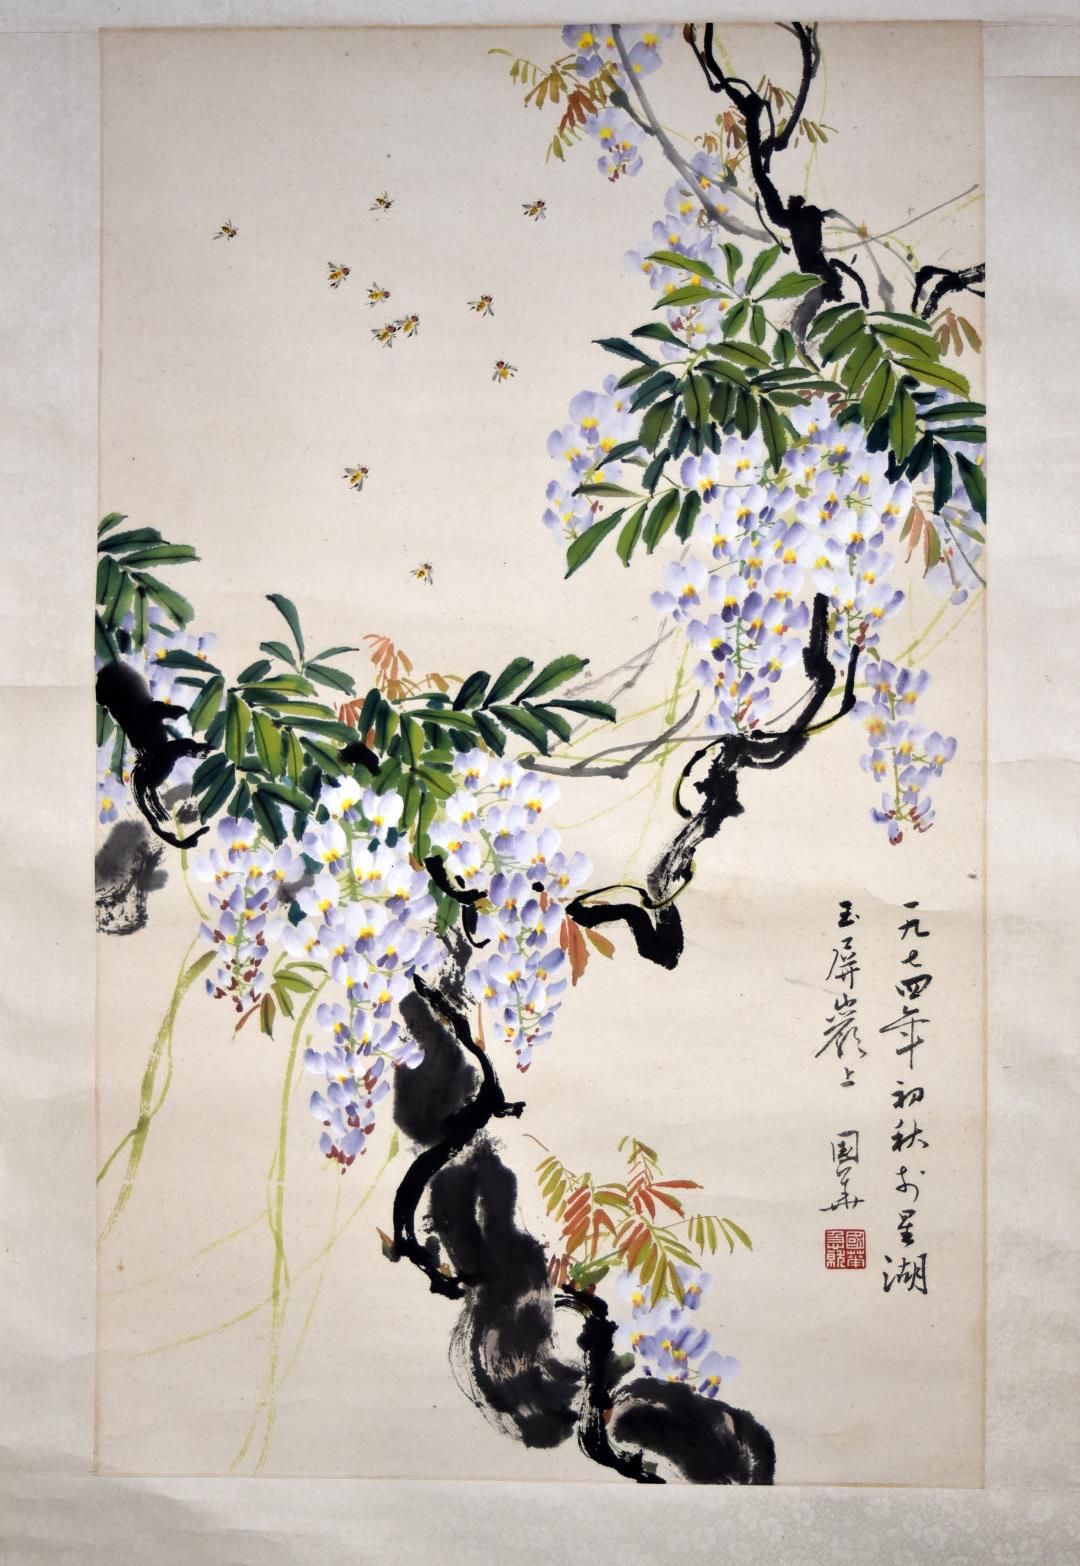 Null 日本 - 昭和时期(1926-1989)

纸上水粉画，蜜蜂在紫藤花间飞舞

H.83厘米-长48厘米（观看时），安装在卷轴上